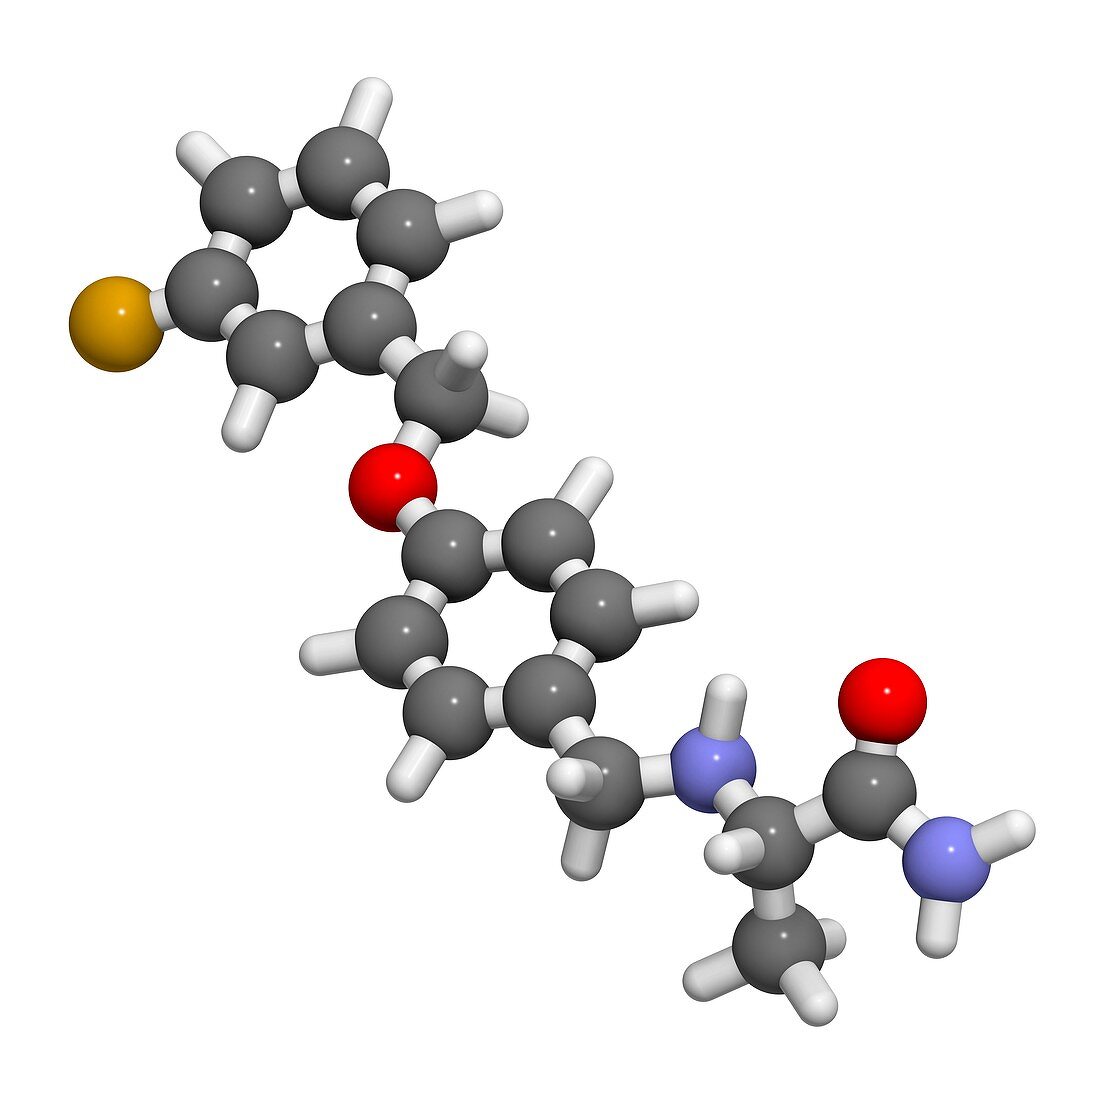 Safinamide Parkinson's disease drug